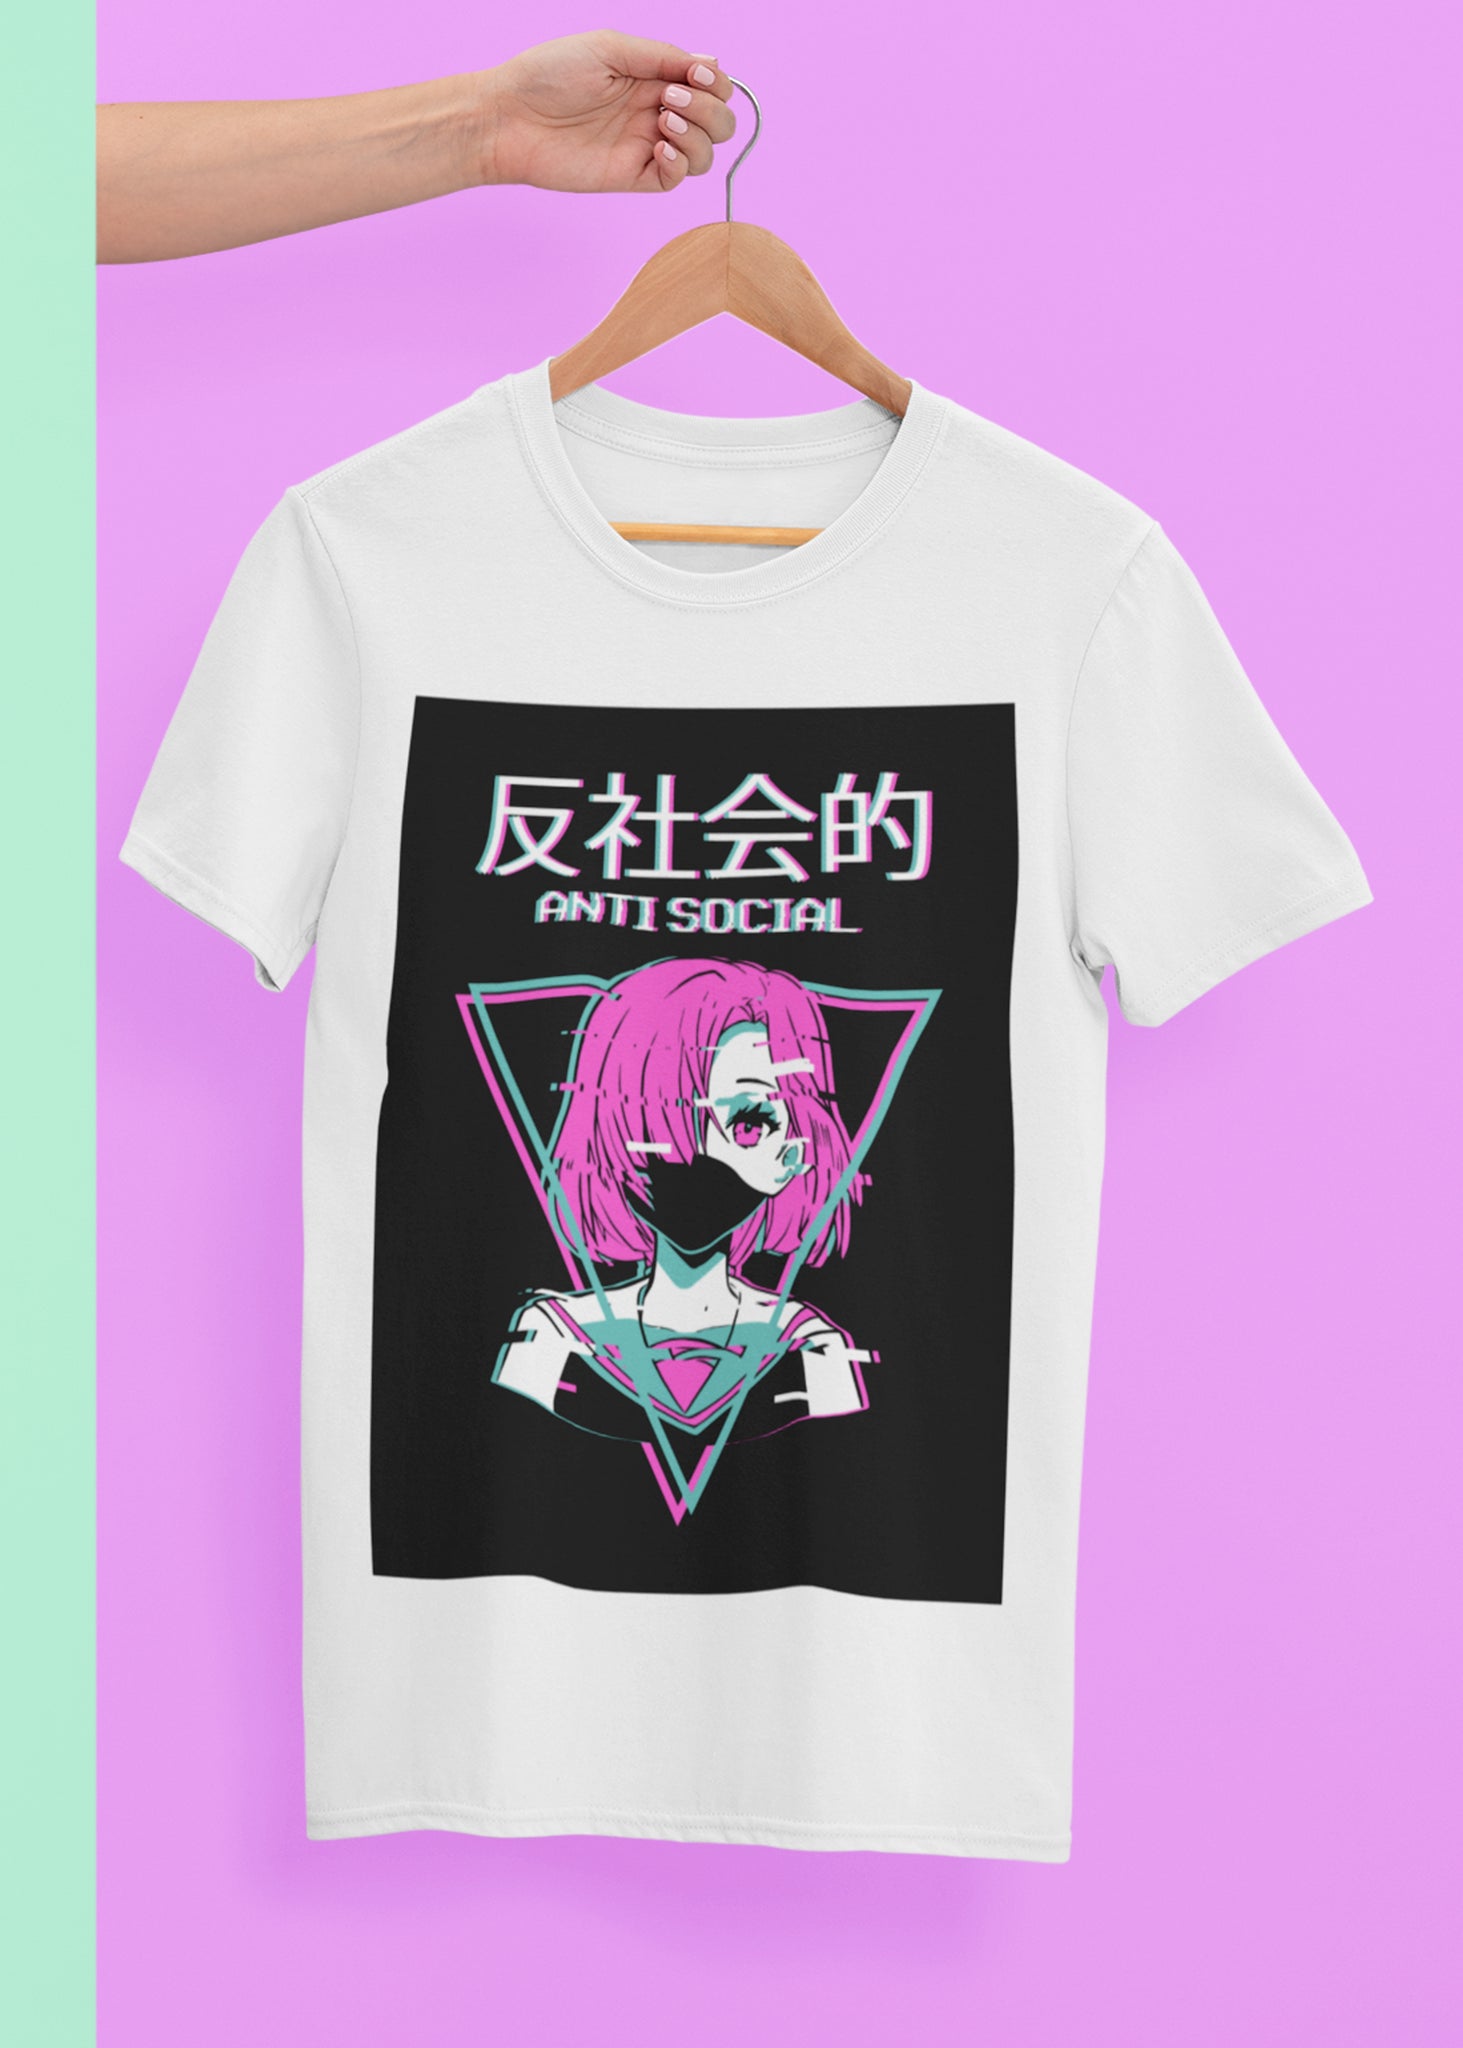 Antisocial Vaporwave Anime Girl Japanese T-Shirt